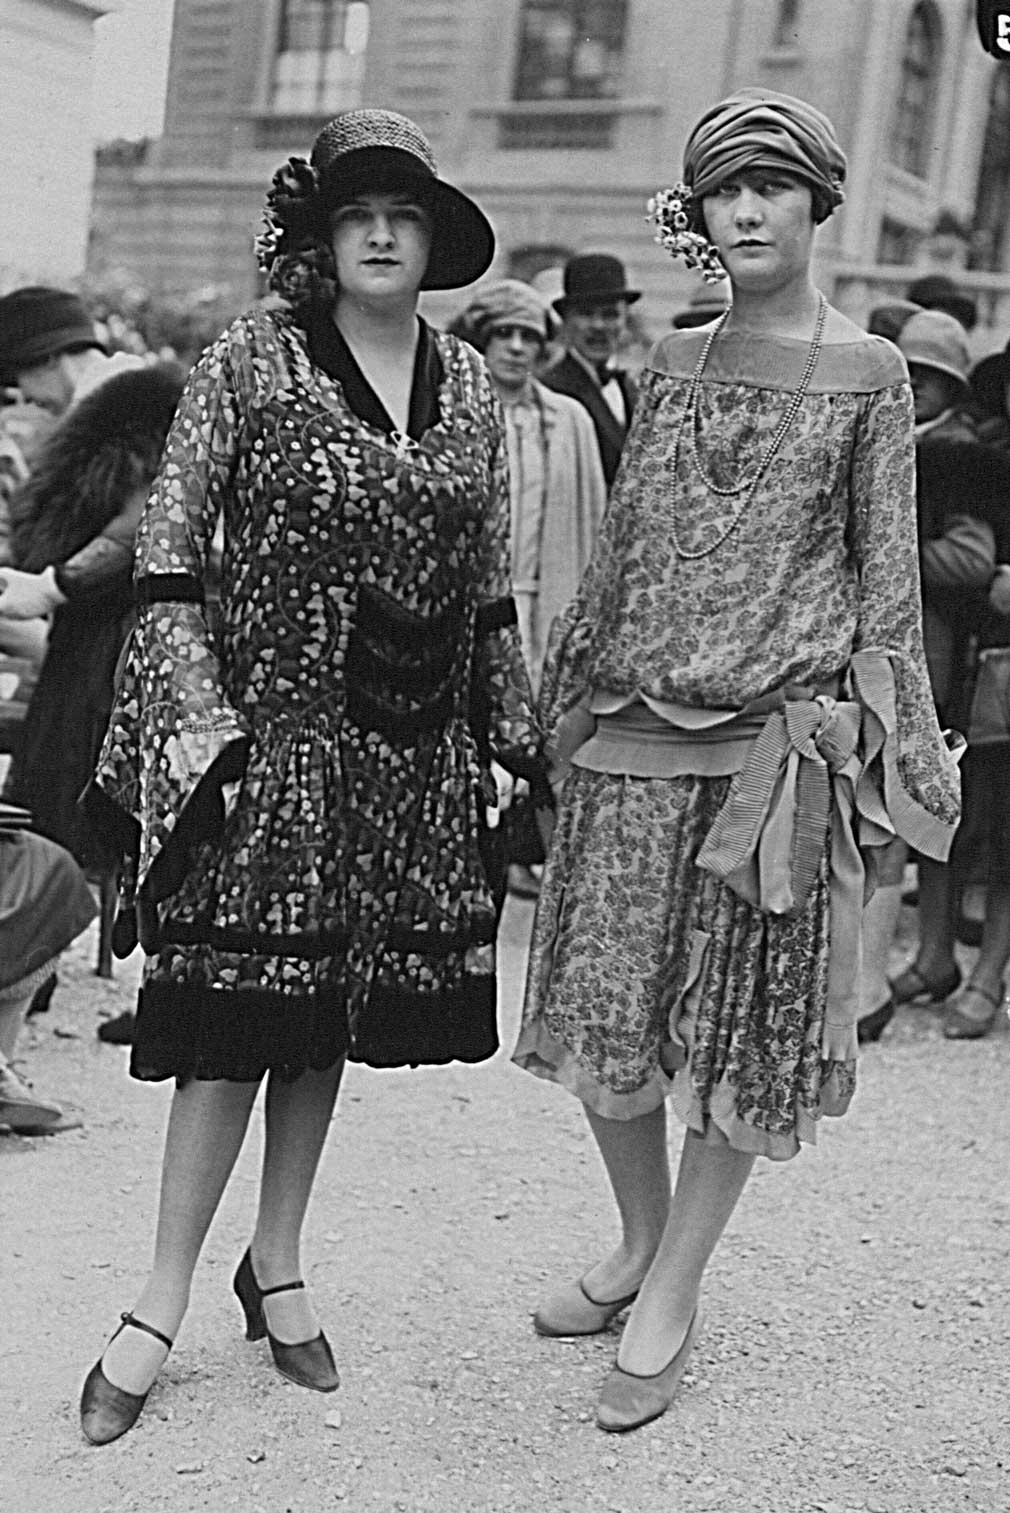 Fino negli anni Venti, i nastri di seta erano un articolo importante del settore della moda, fotografia Seiler & Co, s.d. © Museum.BL, Liestal